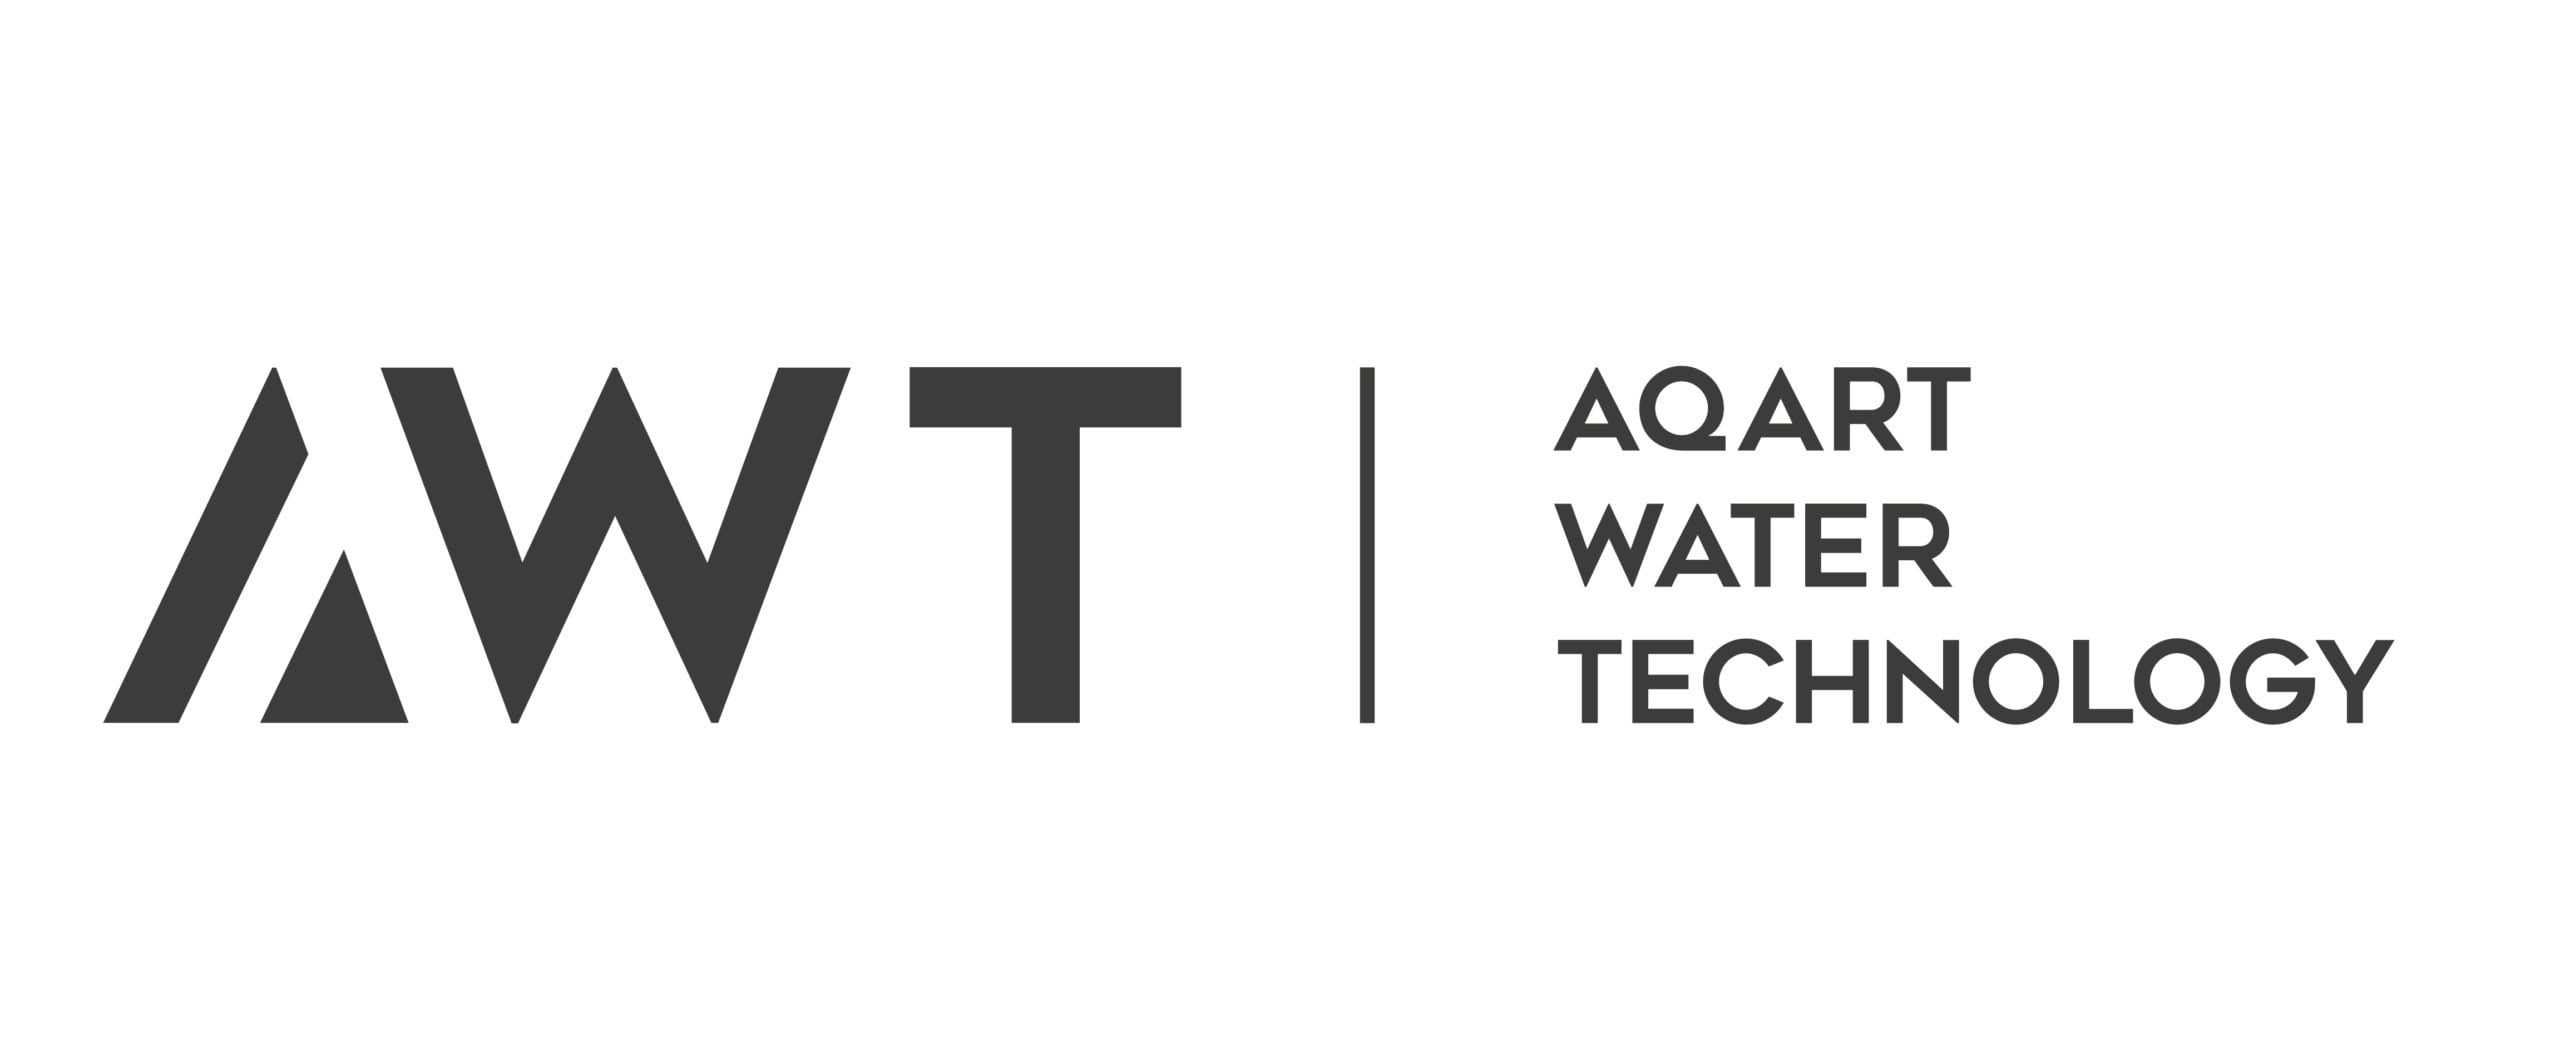 AWT Whirlpool Aqart Water Technology